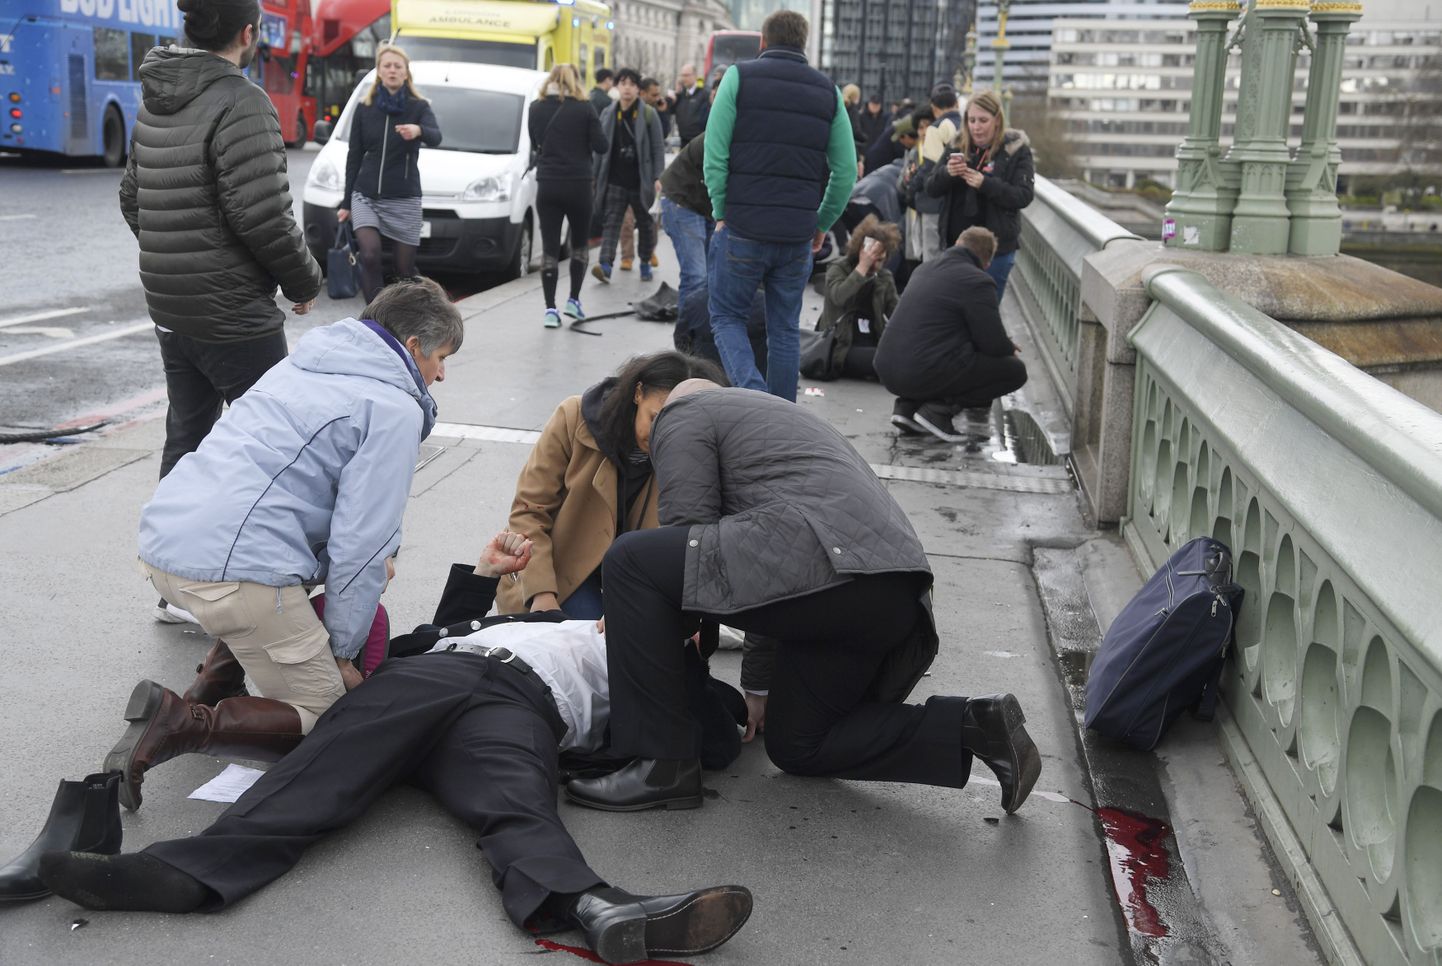 Пострадавшему в результате теракта на Вестминстерском мосту оказывают первую помощь.